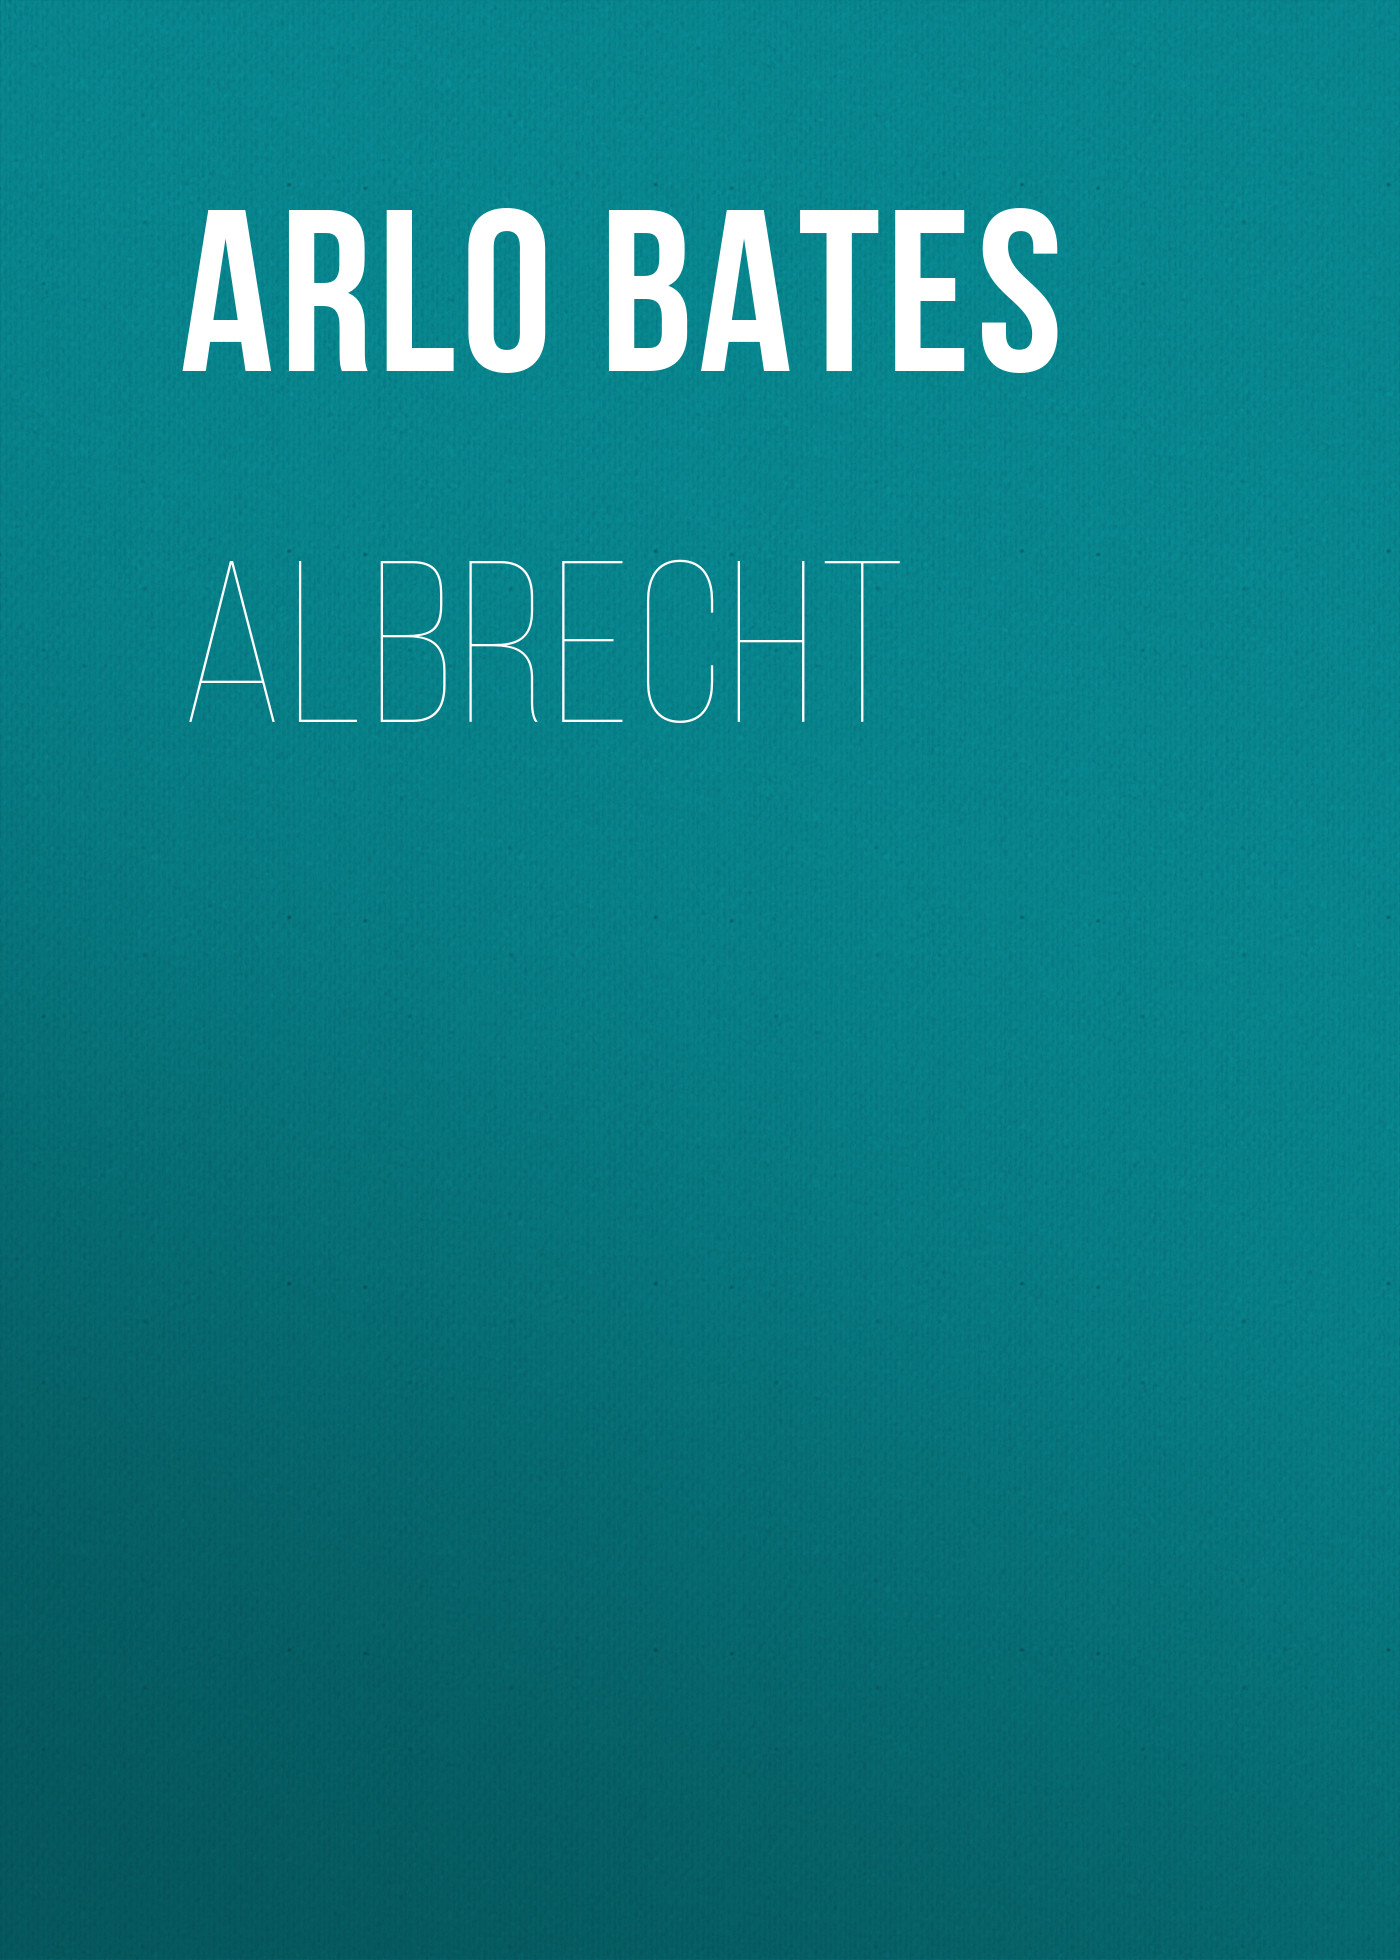 Книга Albrecht из серии , созданная Arlo Bates, может относится к жанру Зарубежная старинная литература, Зарубежная классика. Стоимость электронной книги Albrecht с идентификатором 24174444 составляет 0.90 руб.